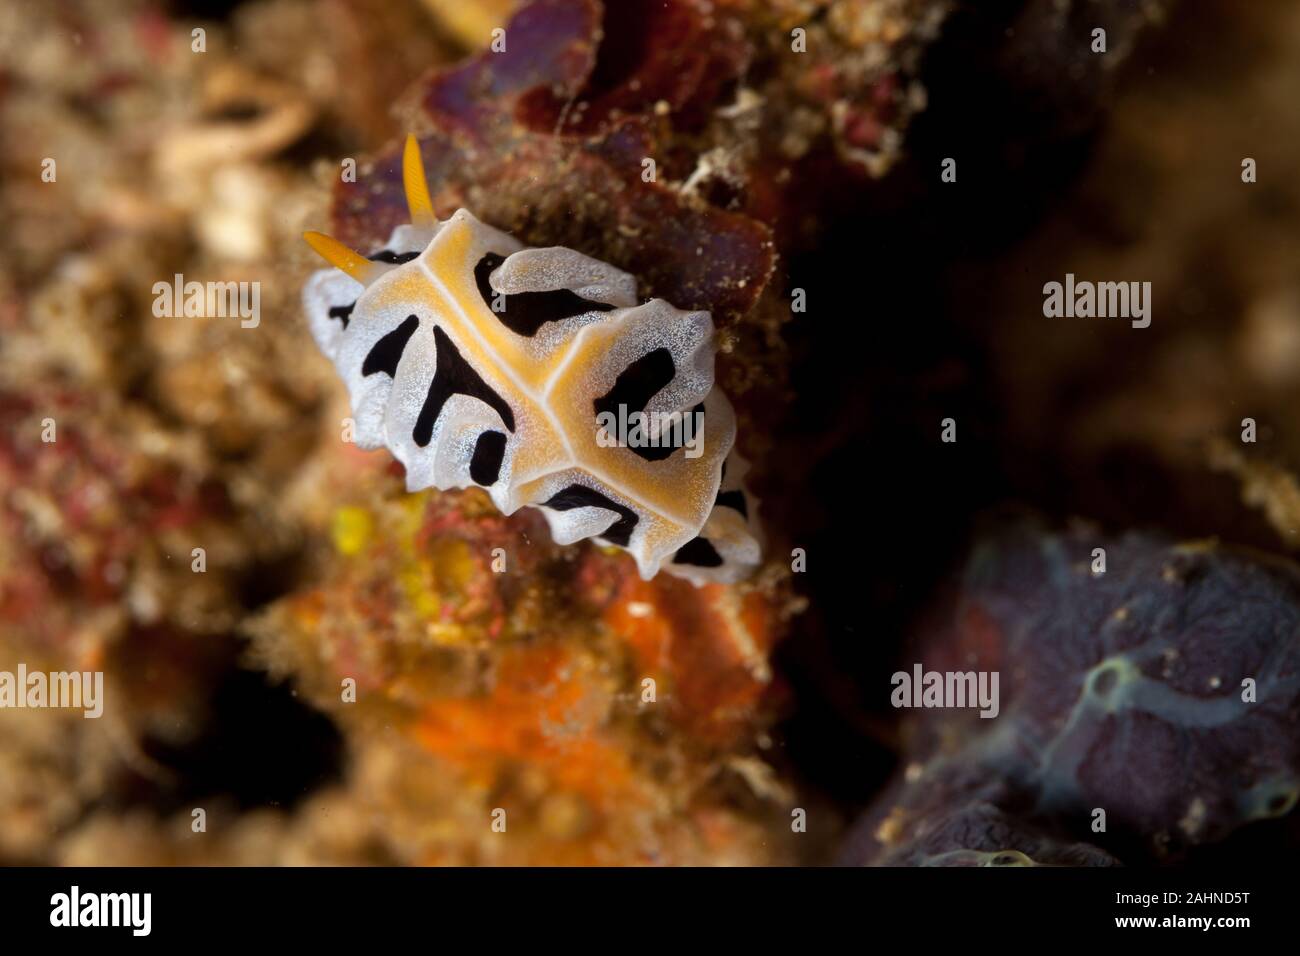 Reticulidia fungia is a species of sea slug Stock Photo